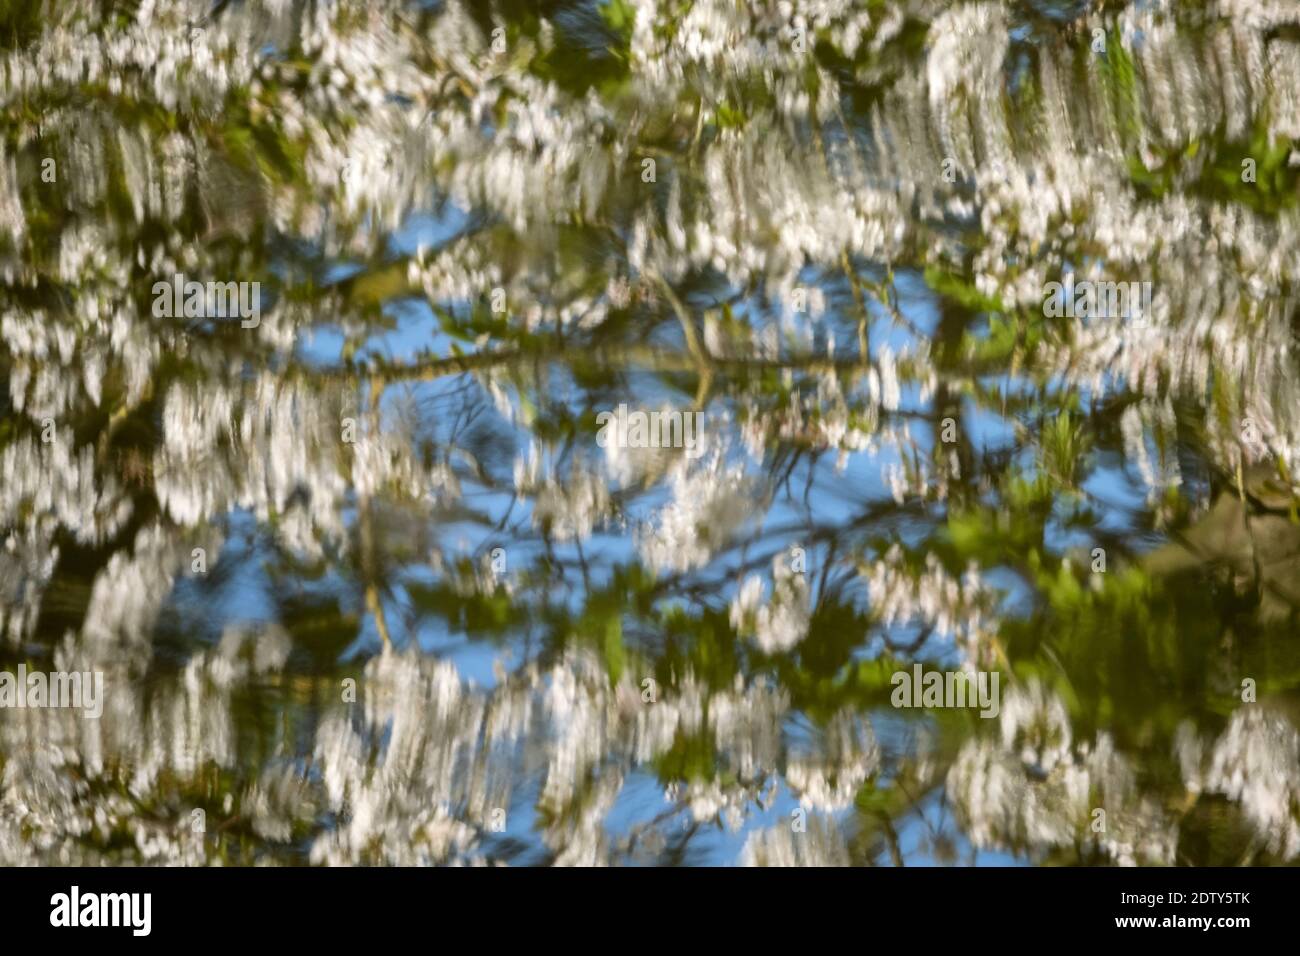 La fioritura dell'albero di primavera si riflette nel fiume Weaver, vicino a WhiteGate, Cheshire, Inghilterra, Regno Unito Foto Stock